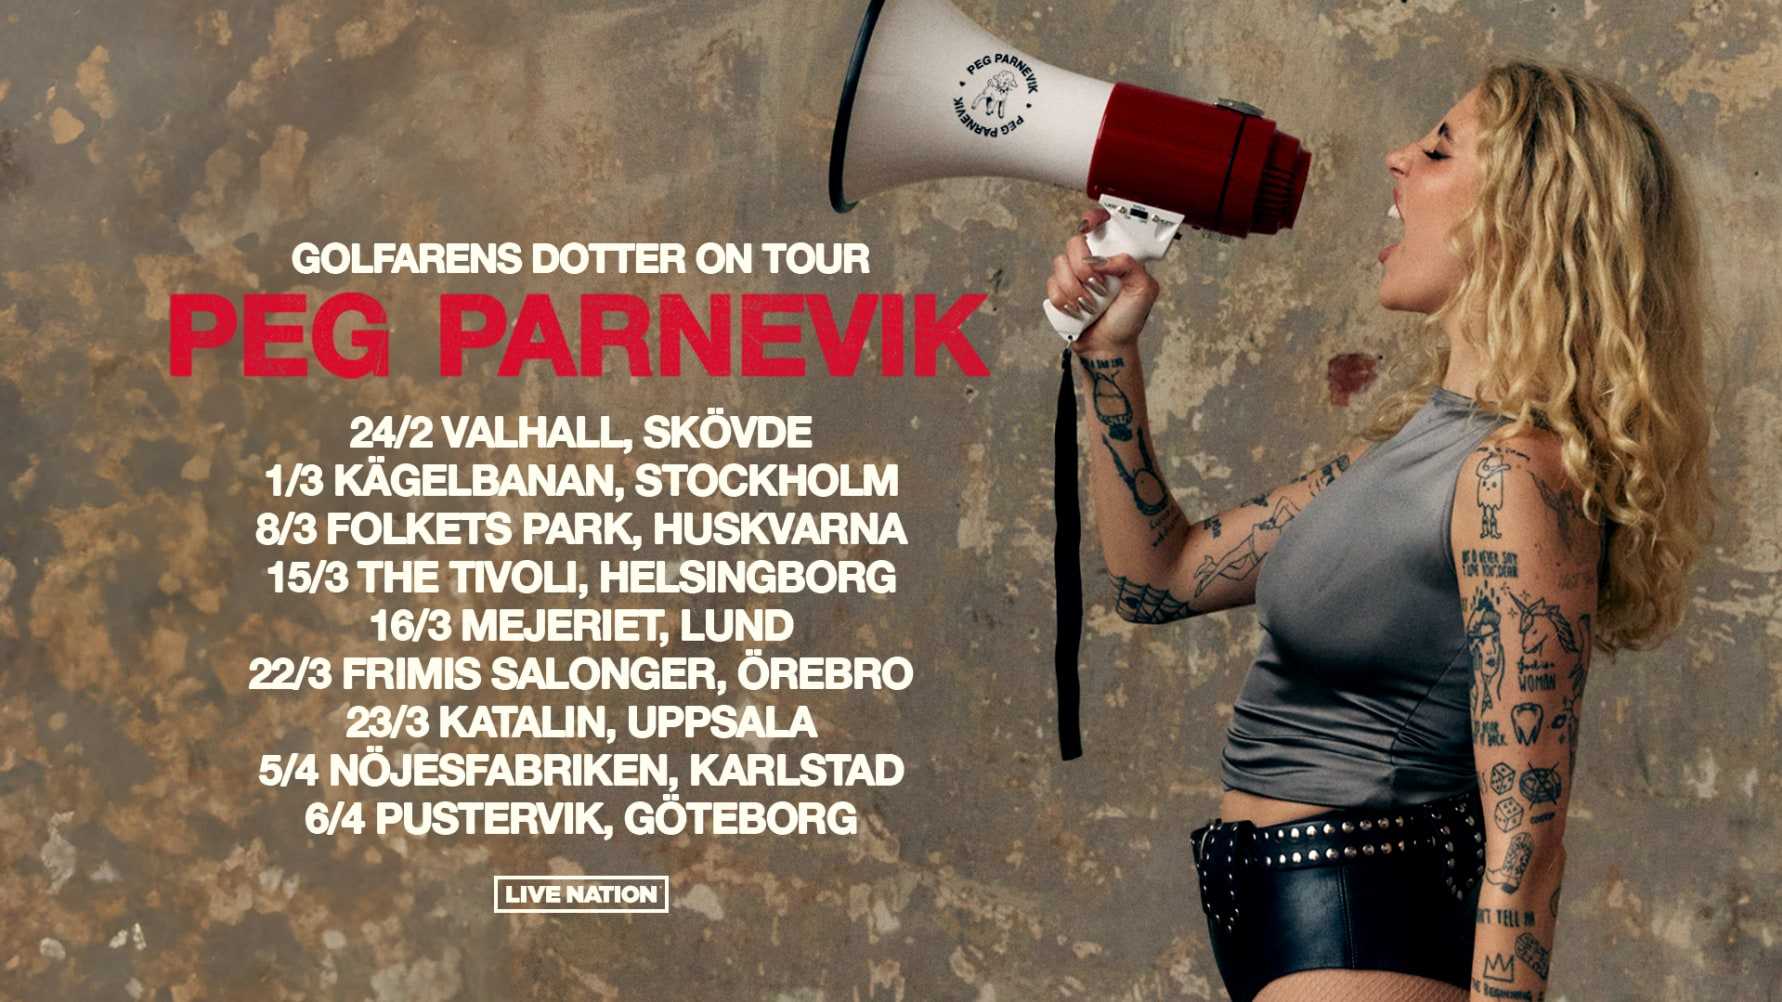 PEG PARNEVIK ÅKER PÅ VÅRTURNÉ – GOLFARENS DOTTER ON TOUR